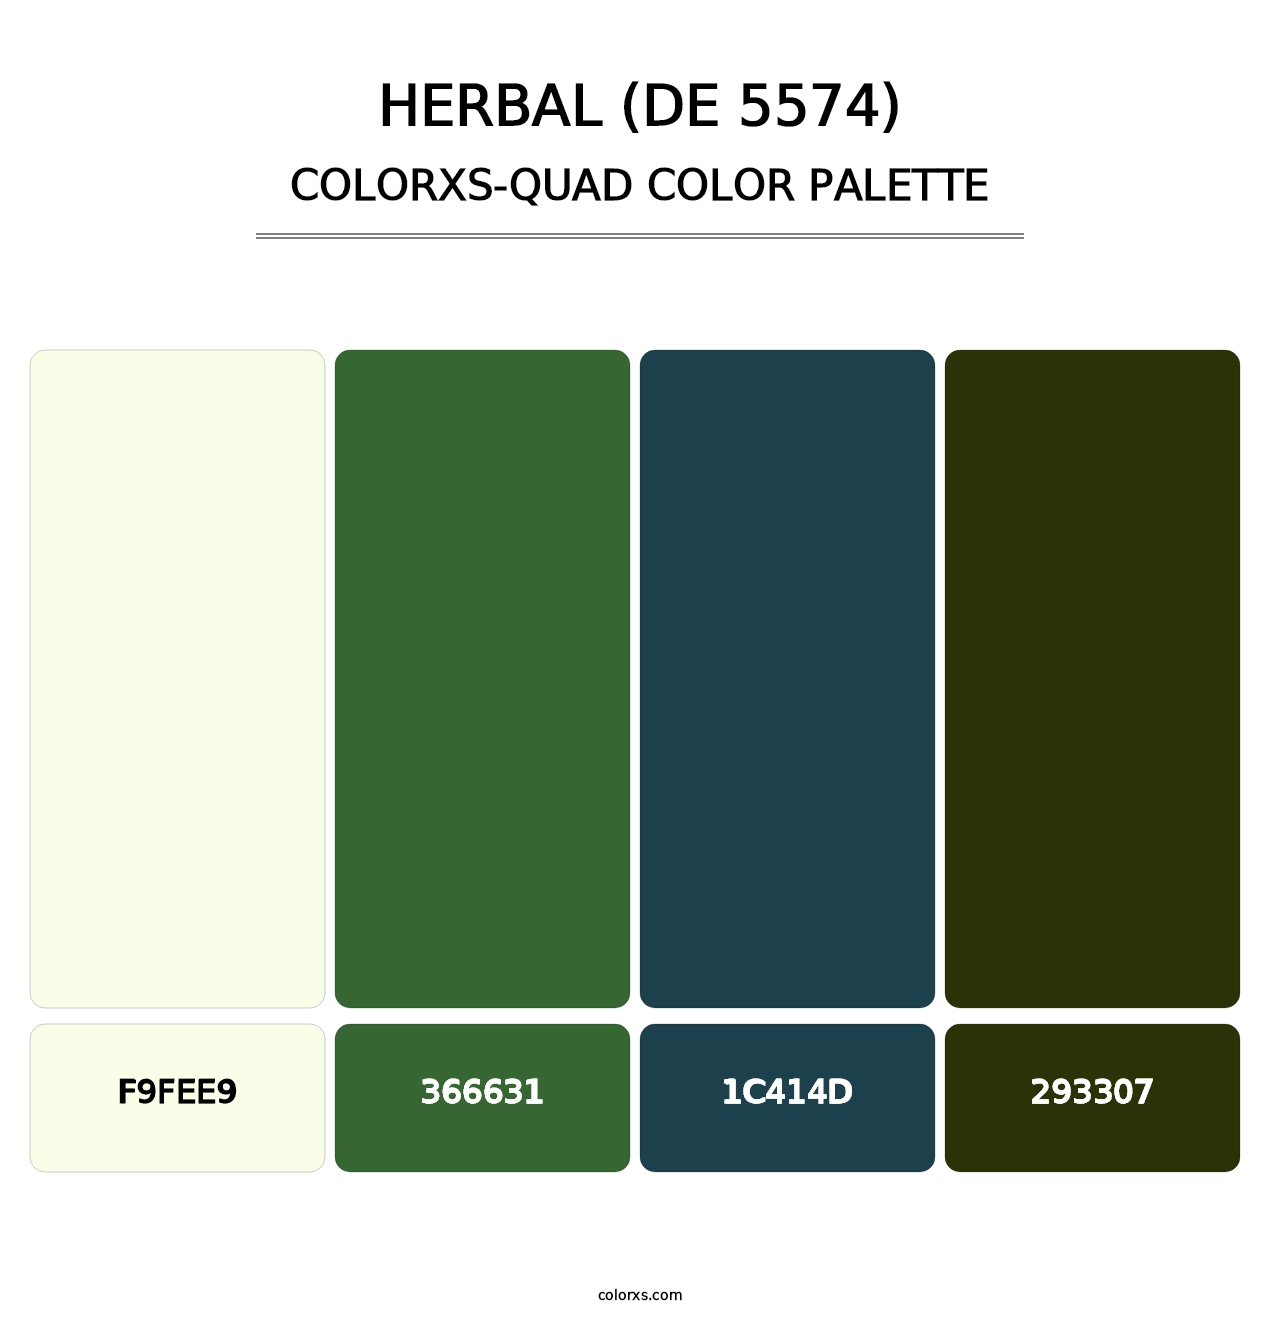 Herbal (DE 5574) - Colorxs Quad Palette